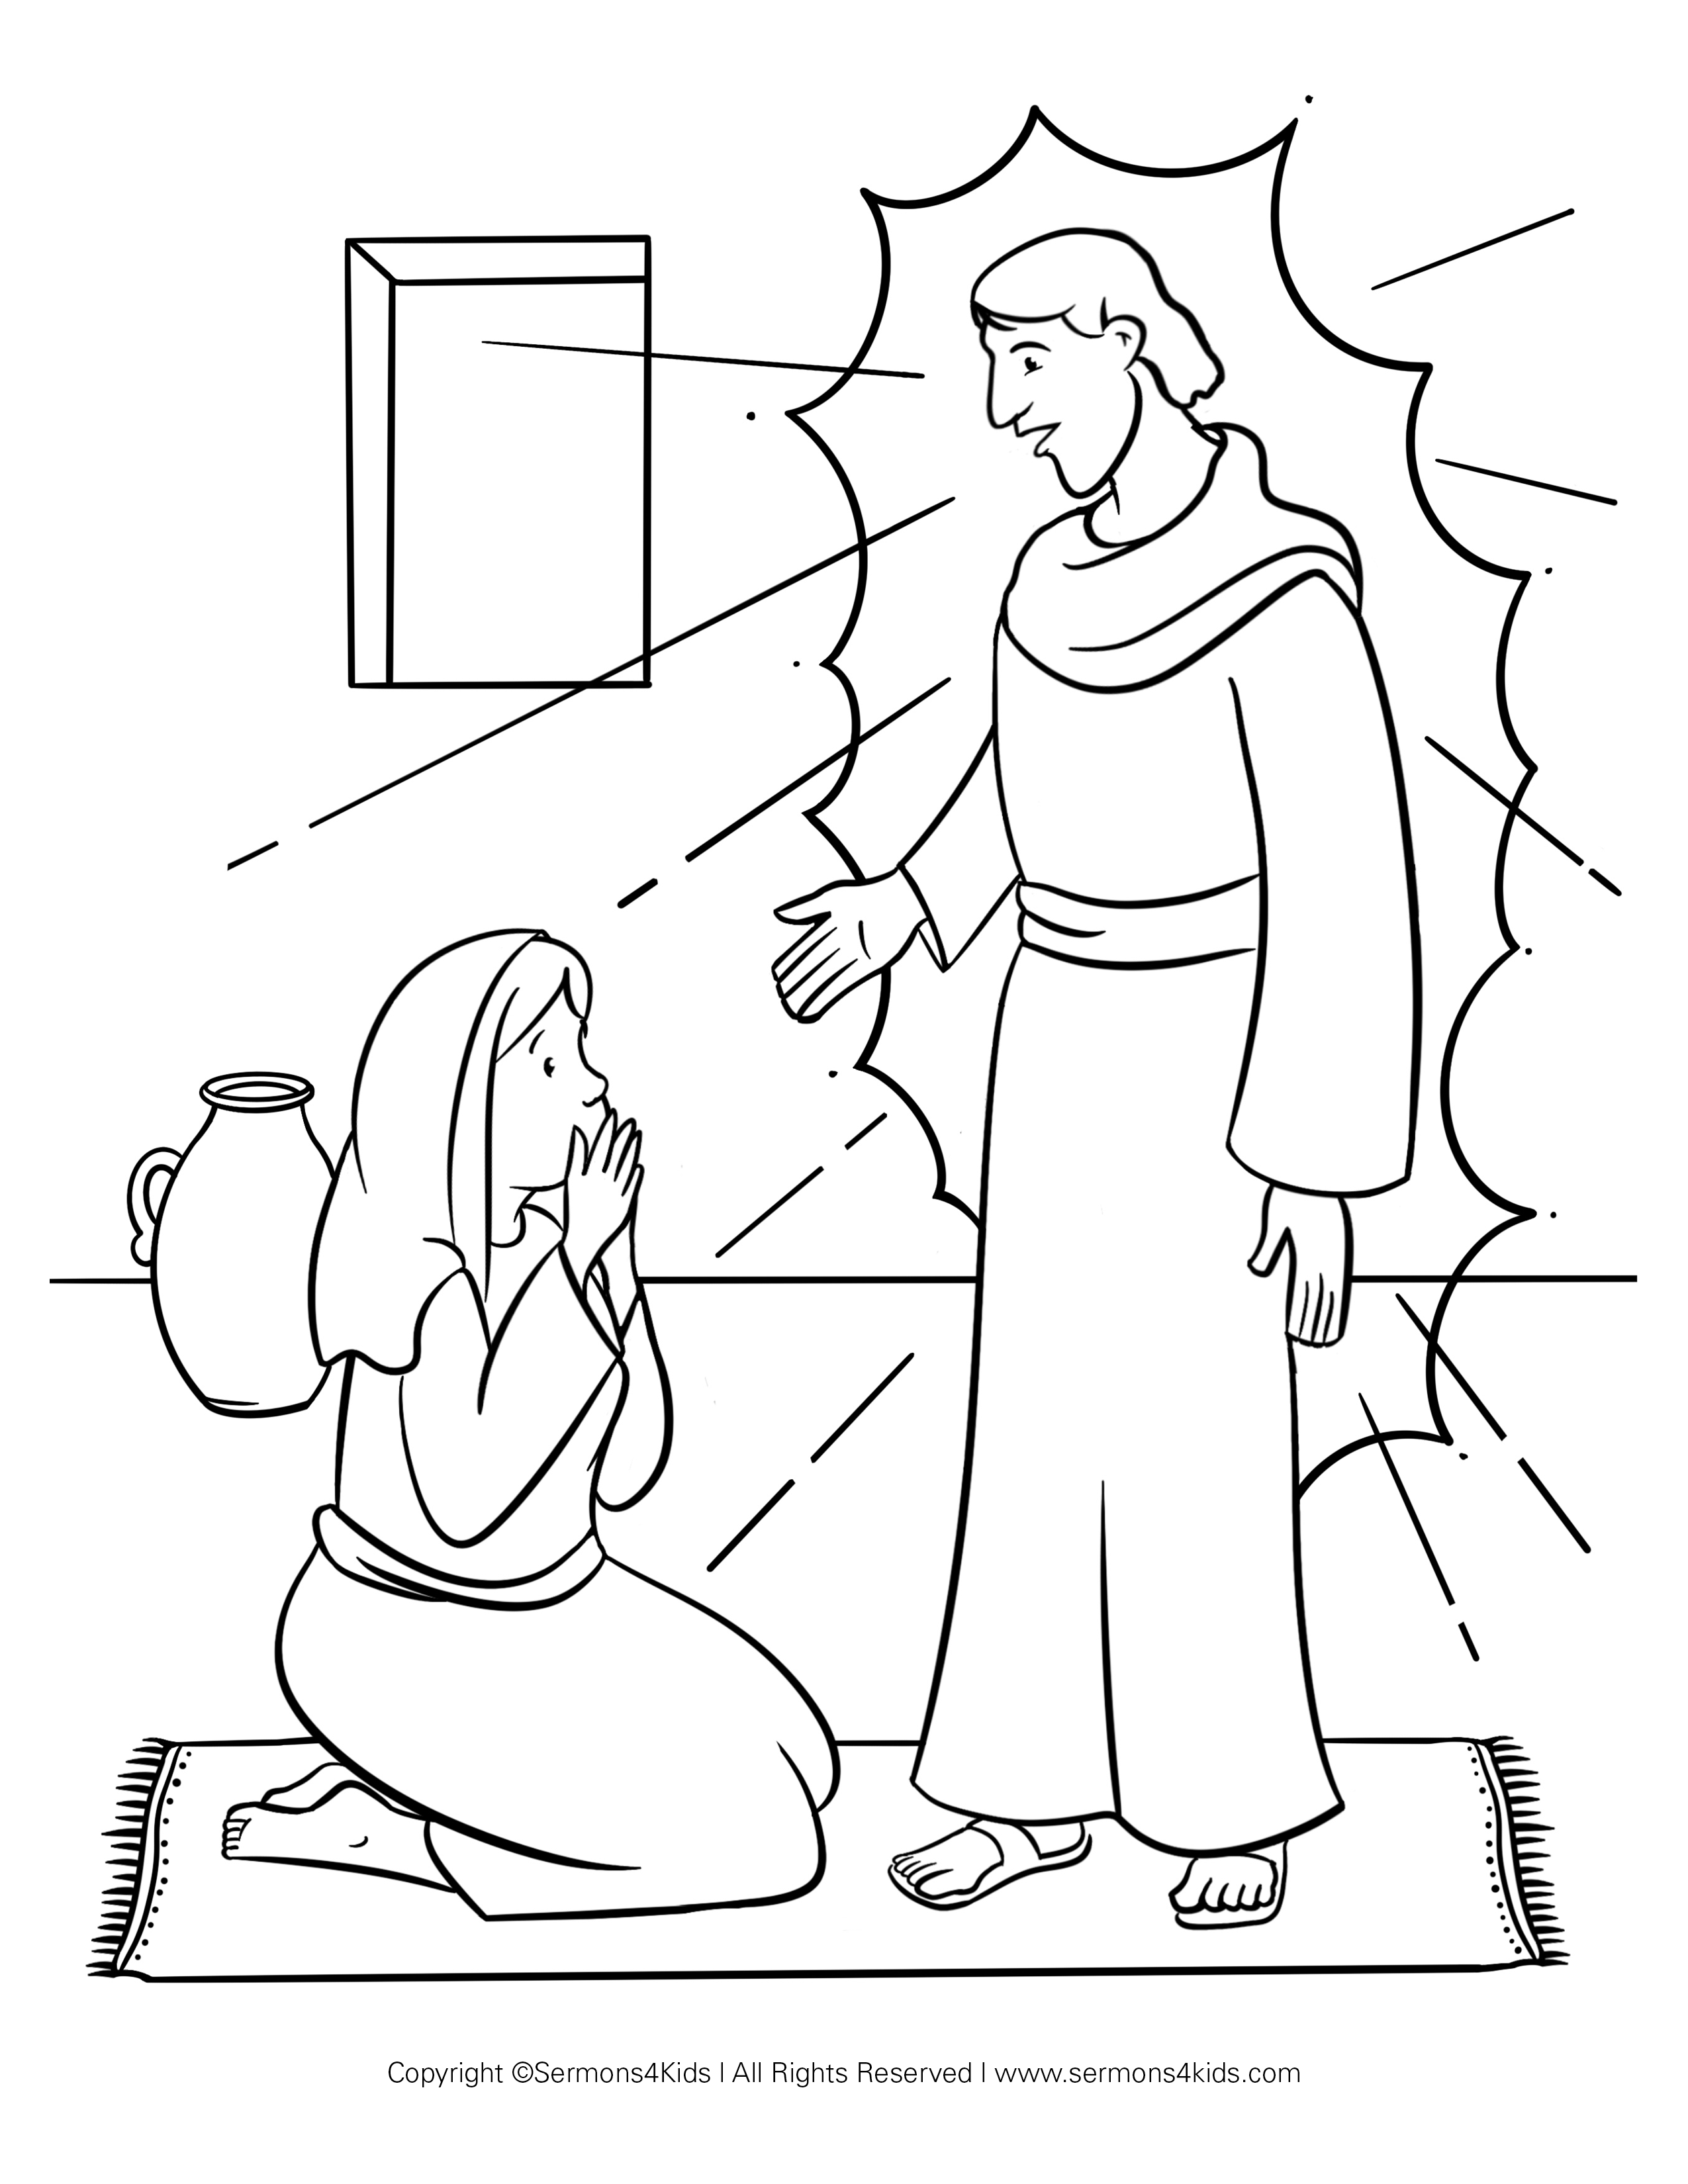 Ángel y María #1 Página para colorear | Sermons4Kids